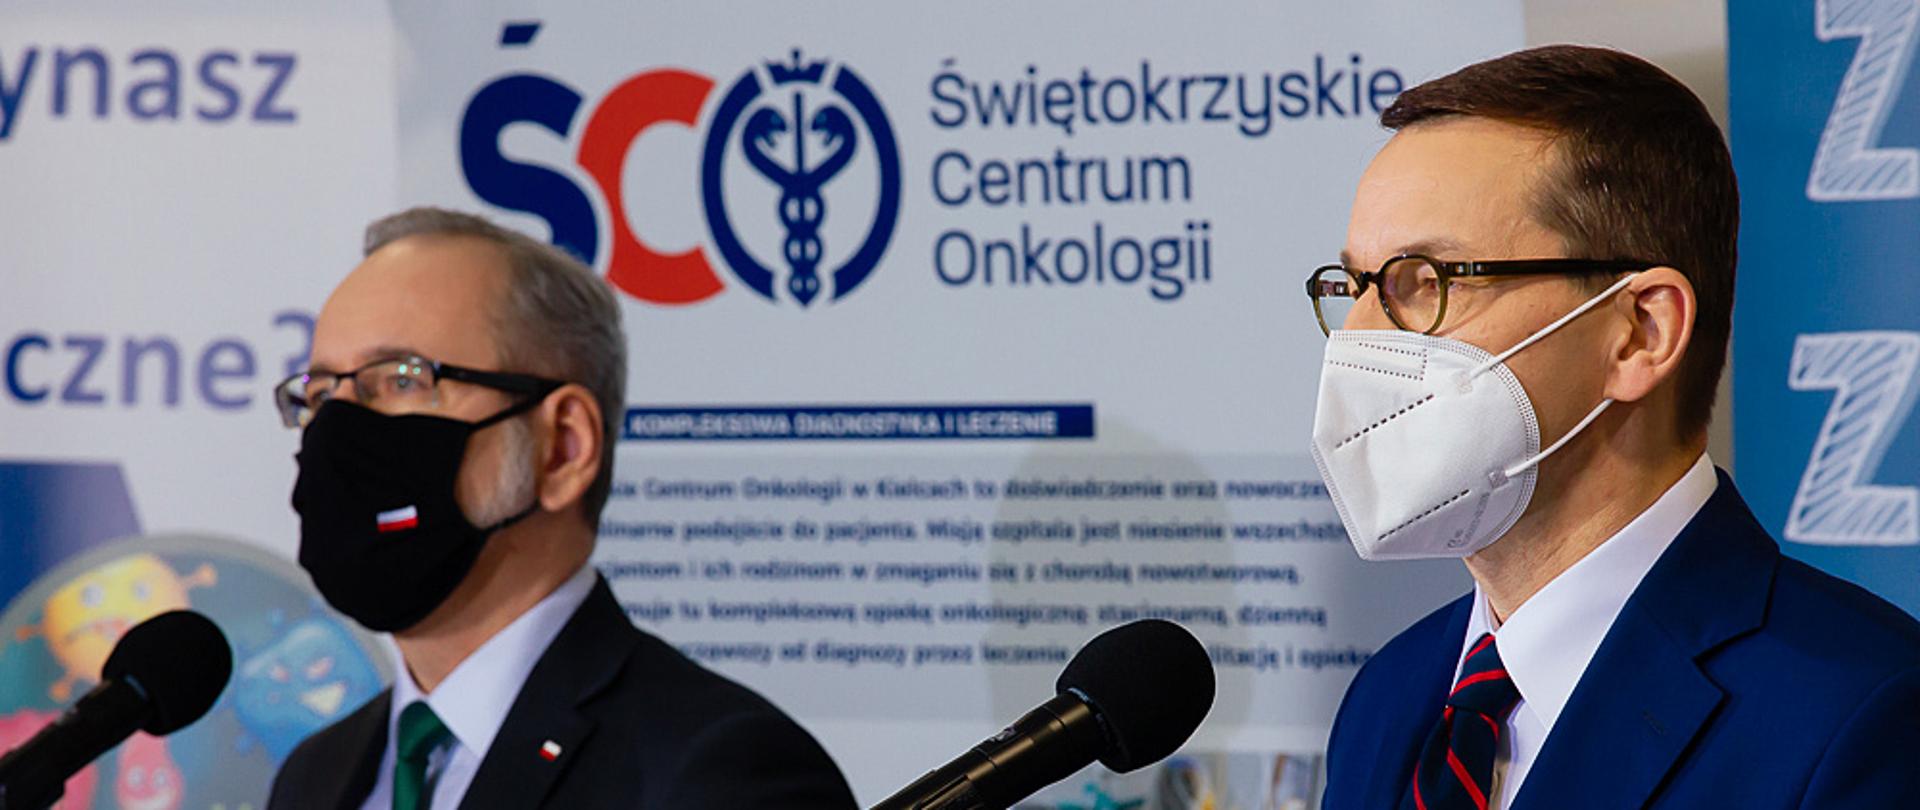 Premier Mateusz Morawiecki oraz minister Adam Niedzielski stoją przy mikrofonach podczas konferencji prasowej. W tle ścianki reklamowe Świętokrzyskiego Centrum Onkologii.